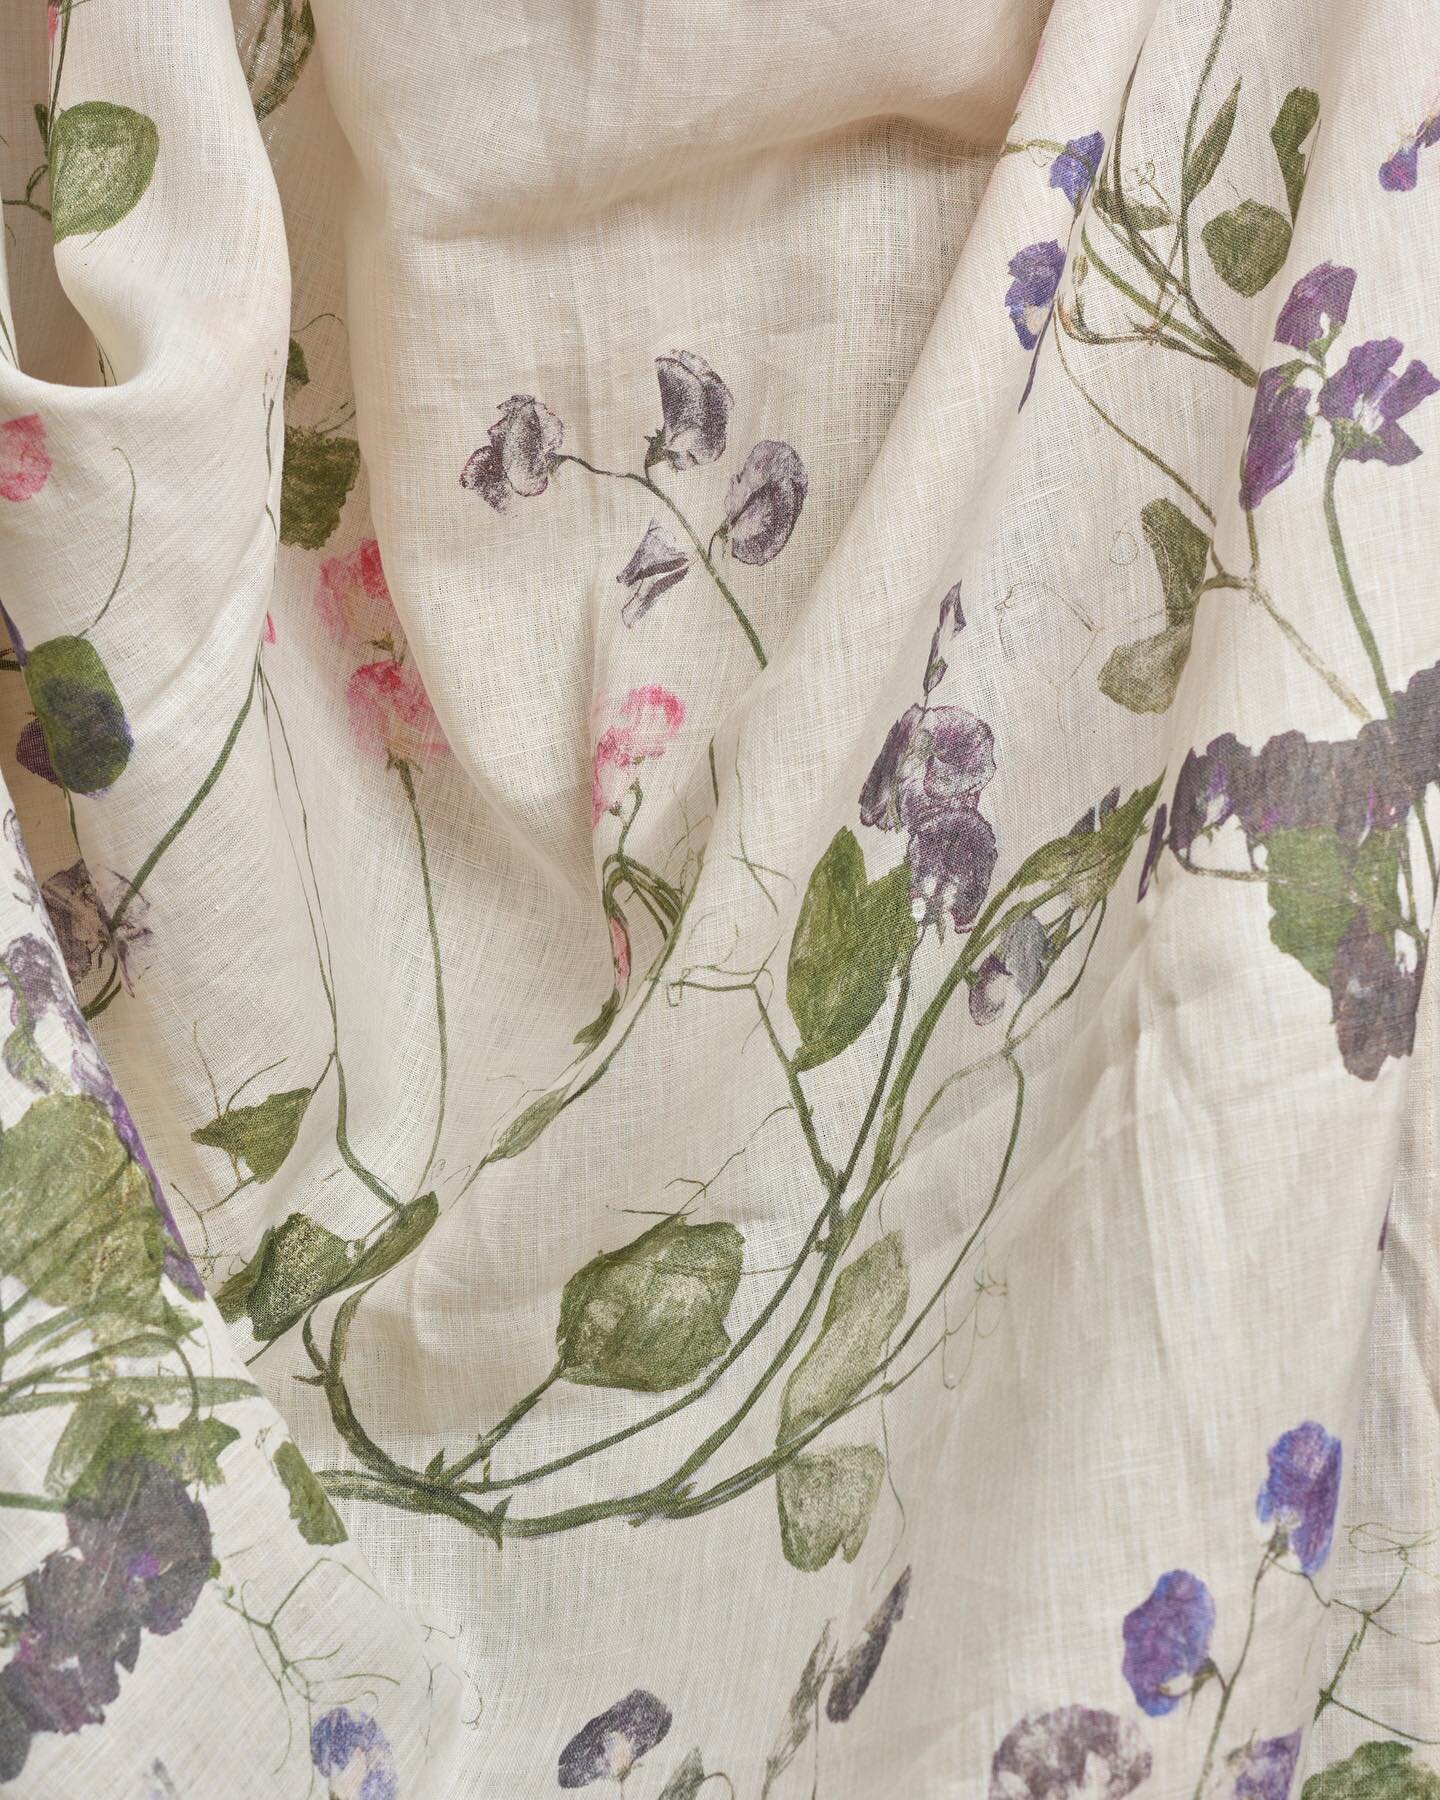 Sweet pea linen mural #sweetpealinen #pressedflowers #irishlinen #growing #blues #purples #pinks